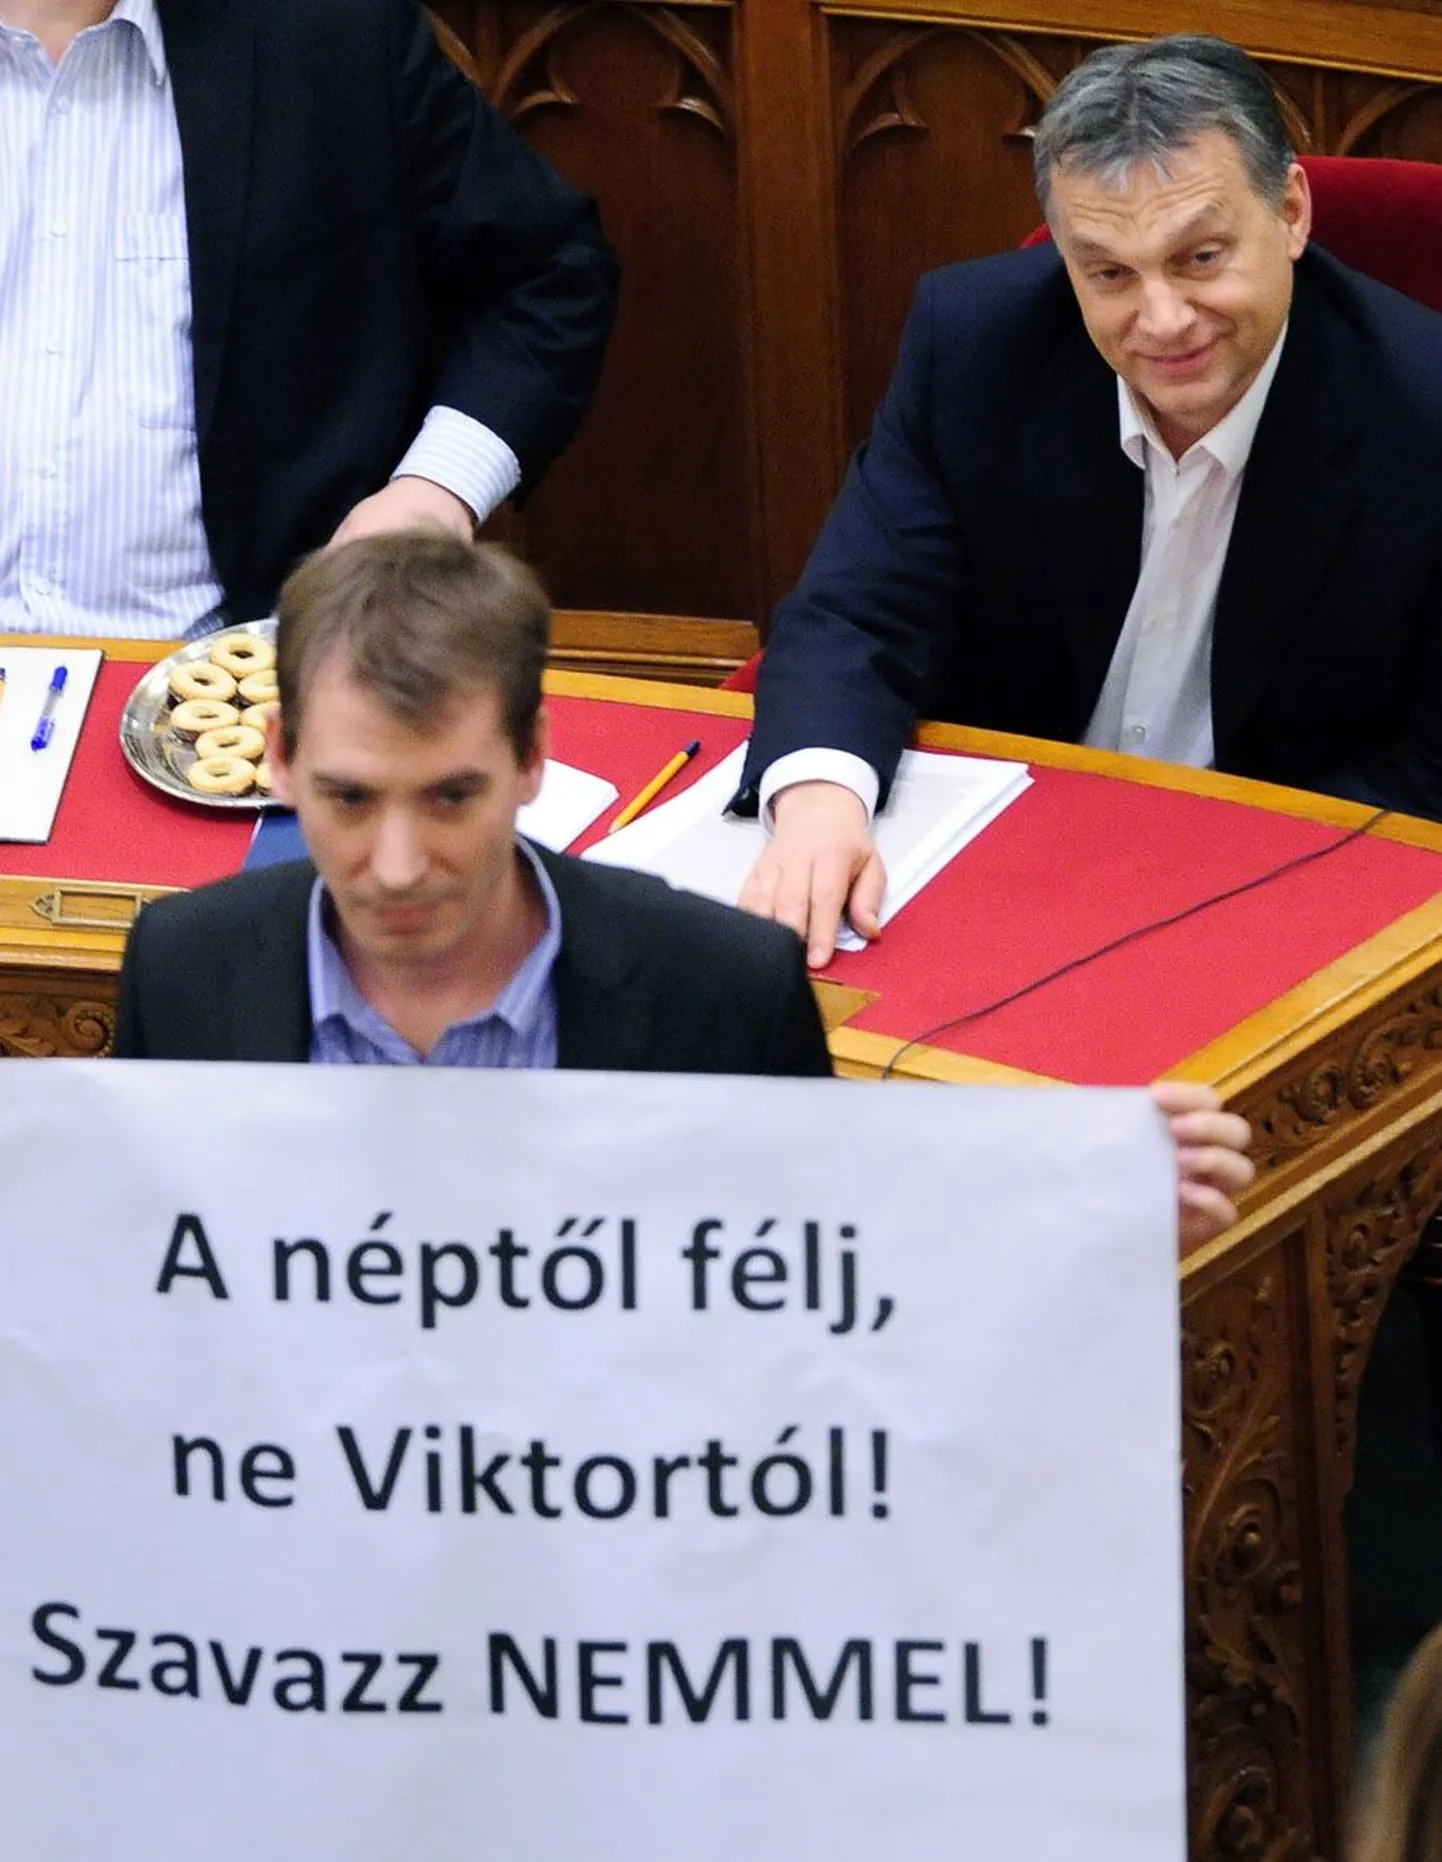 Eile parlamendis välja toodud plakat kutsus hääletama põhiseadusmuudatuste vastu. Peaminister Viktor Orbán (taga) saavutas aga hääletusel soovitud võidu.